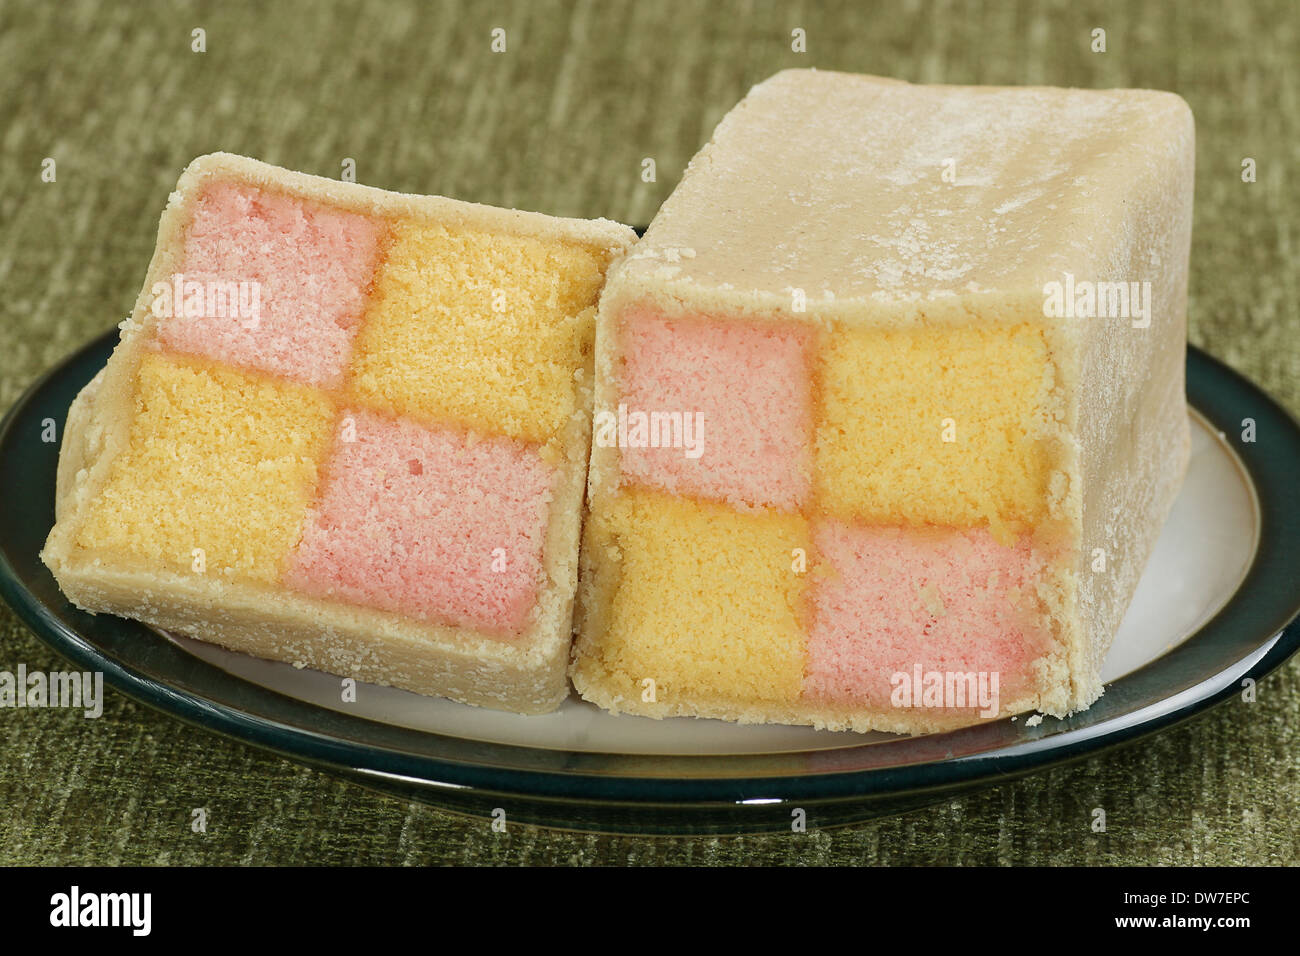 Rose et jaune alimentaire gâteau éponge battenberg wit massepain amande Banque D'Images